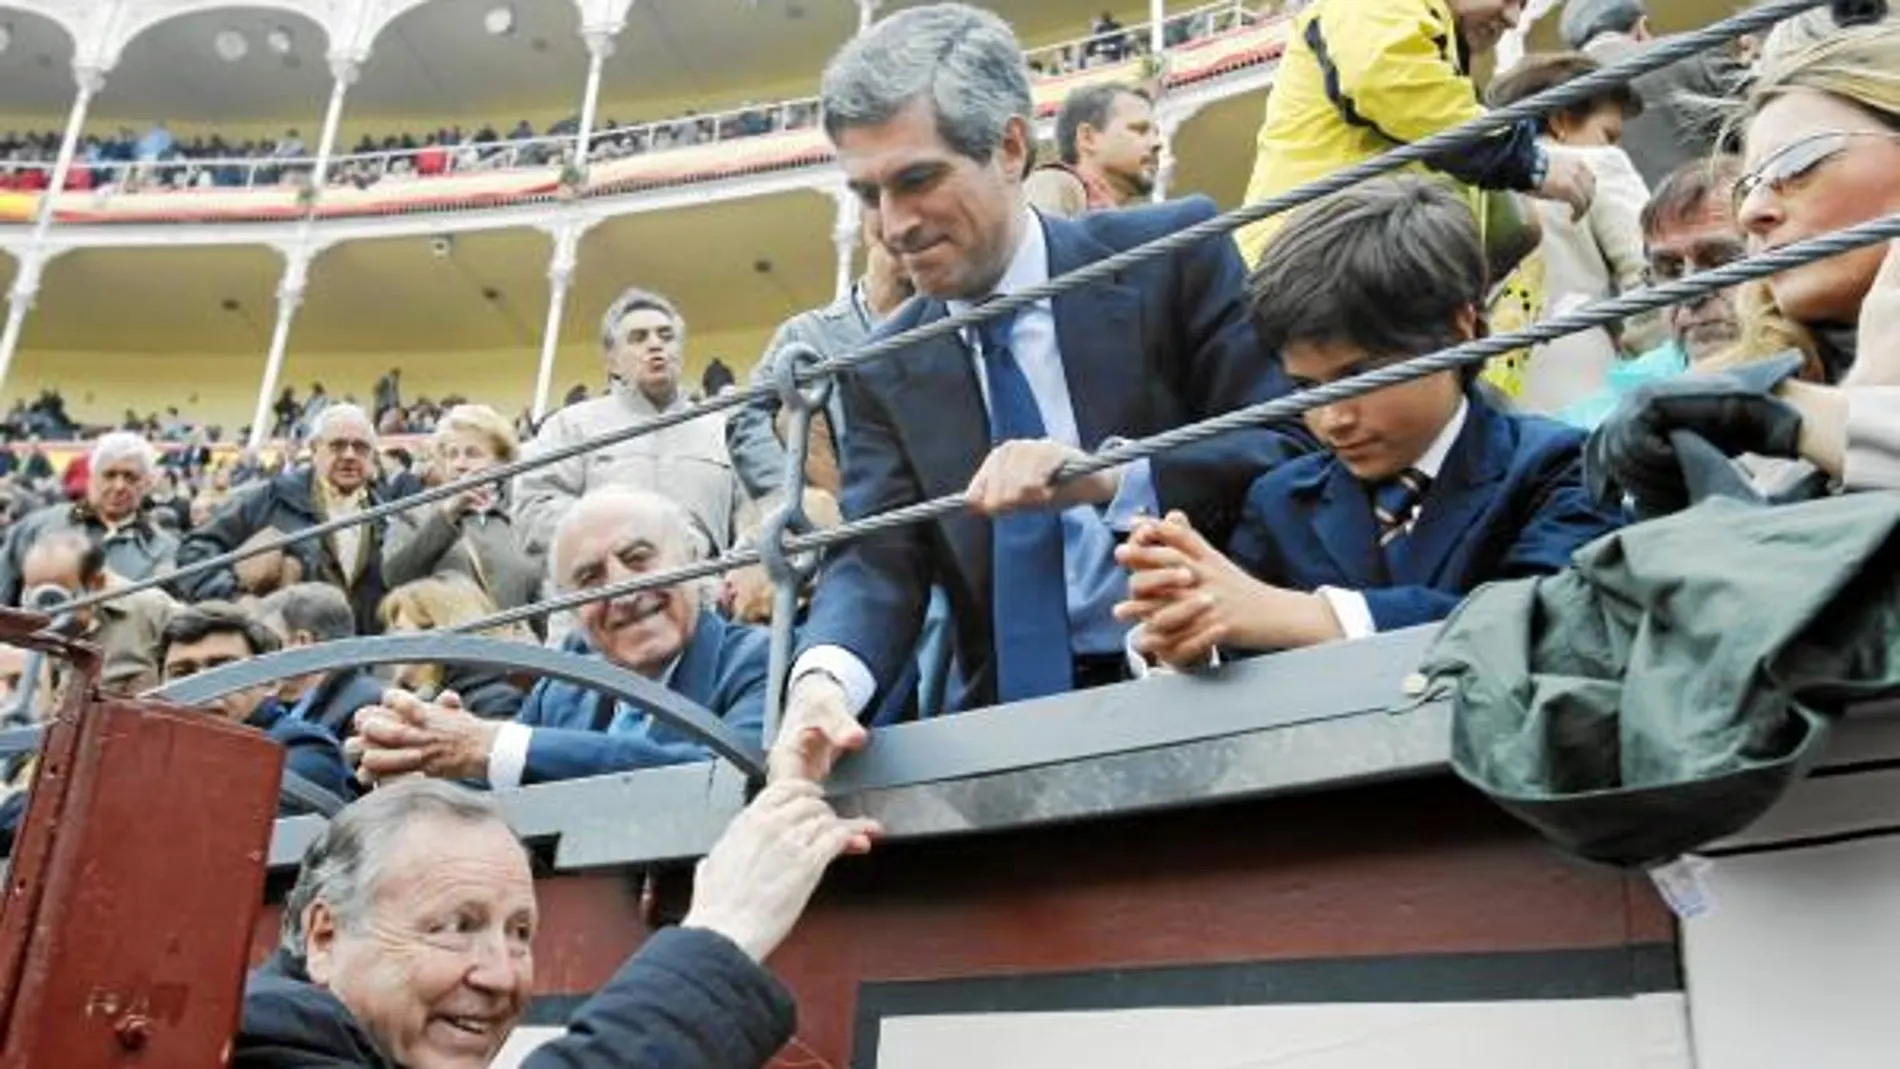 El ex alcalde de Madrid Álvarez del Manzano saluda a Adolfo Suárez Illana y su familia